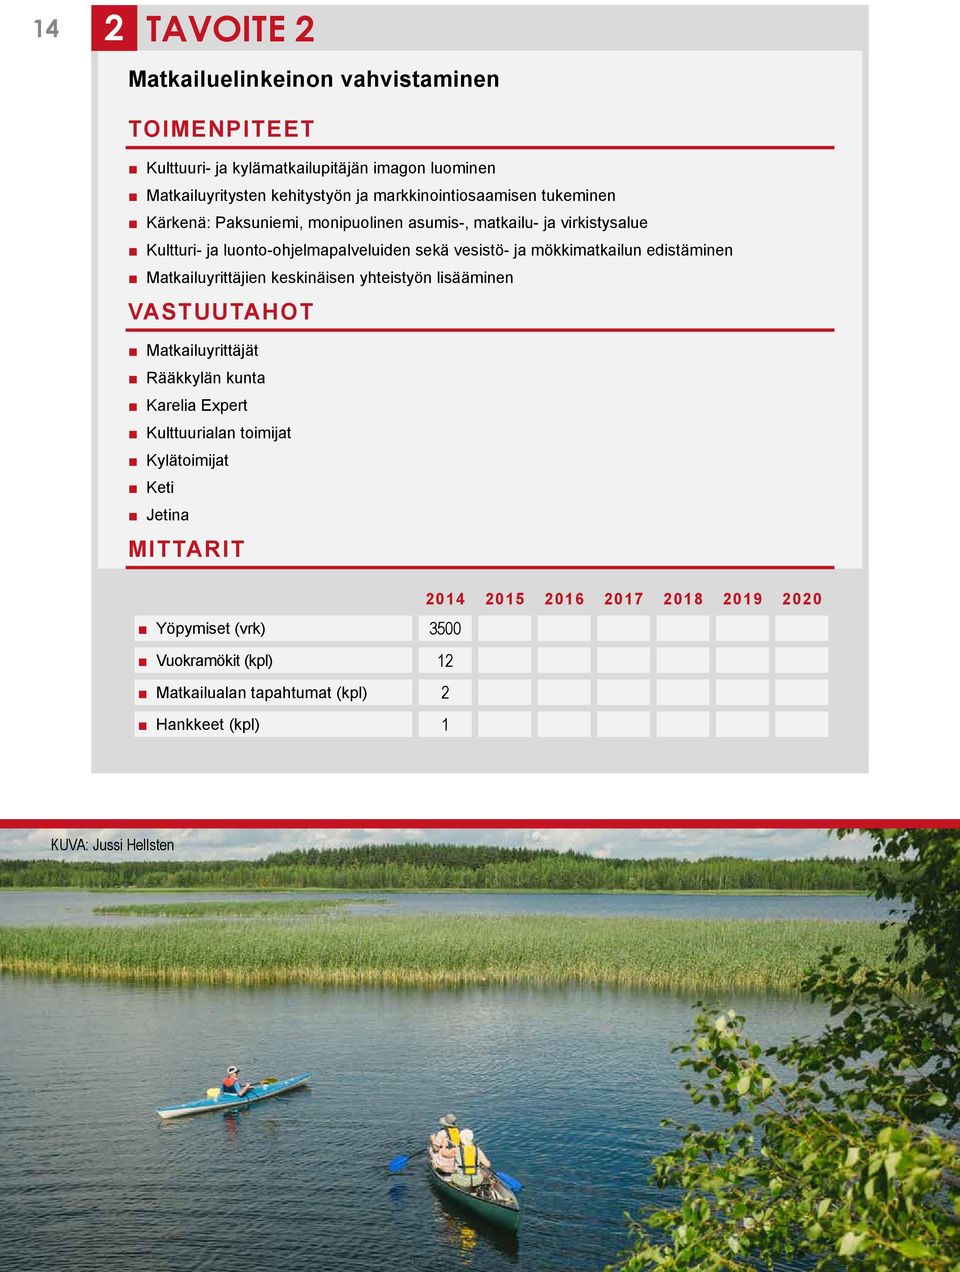 sekä vesistö- ja mökkimatkailun edistäminen Matkailuyrittäjien keskinäisen yhteistyön lisääminen Matkailuyrittäjät Rääkkylän kunta Karelia